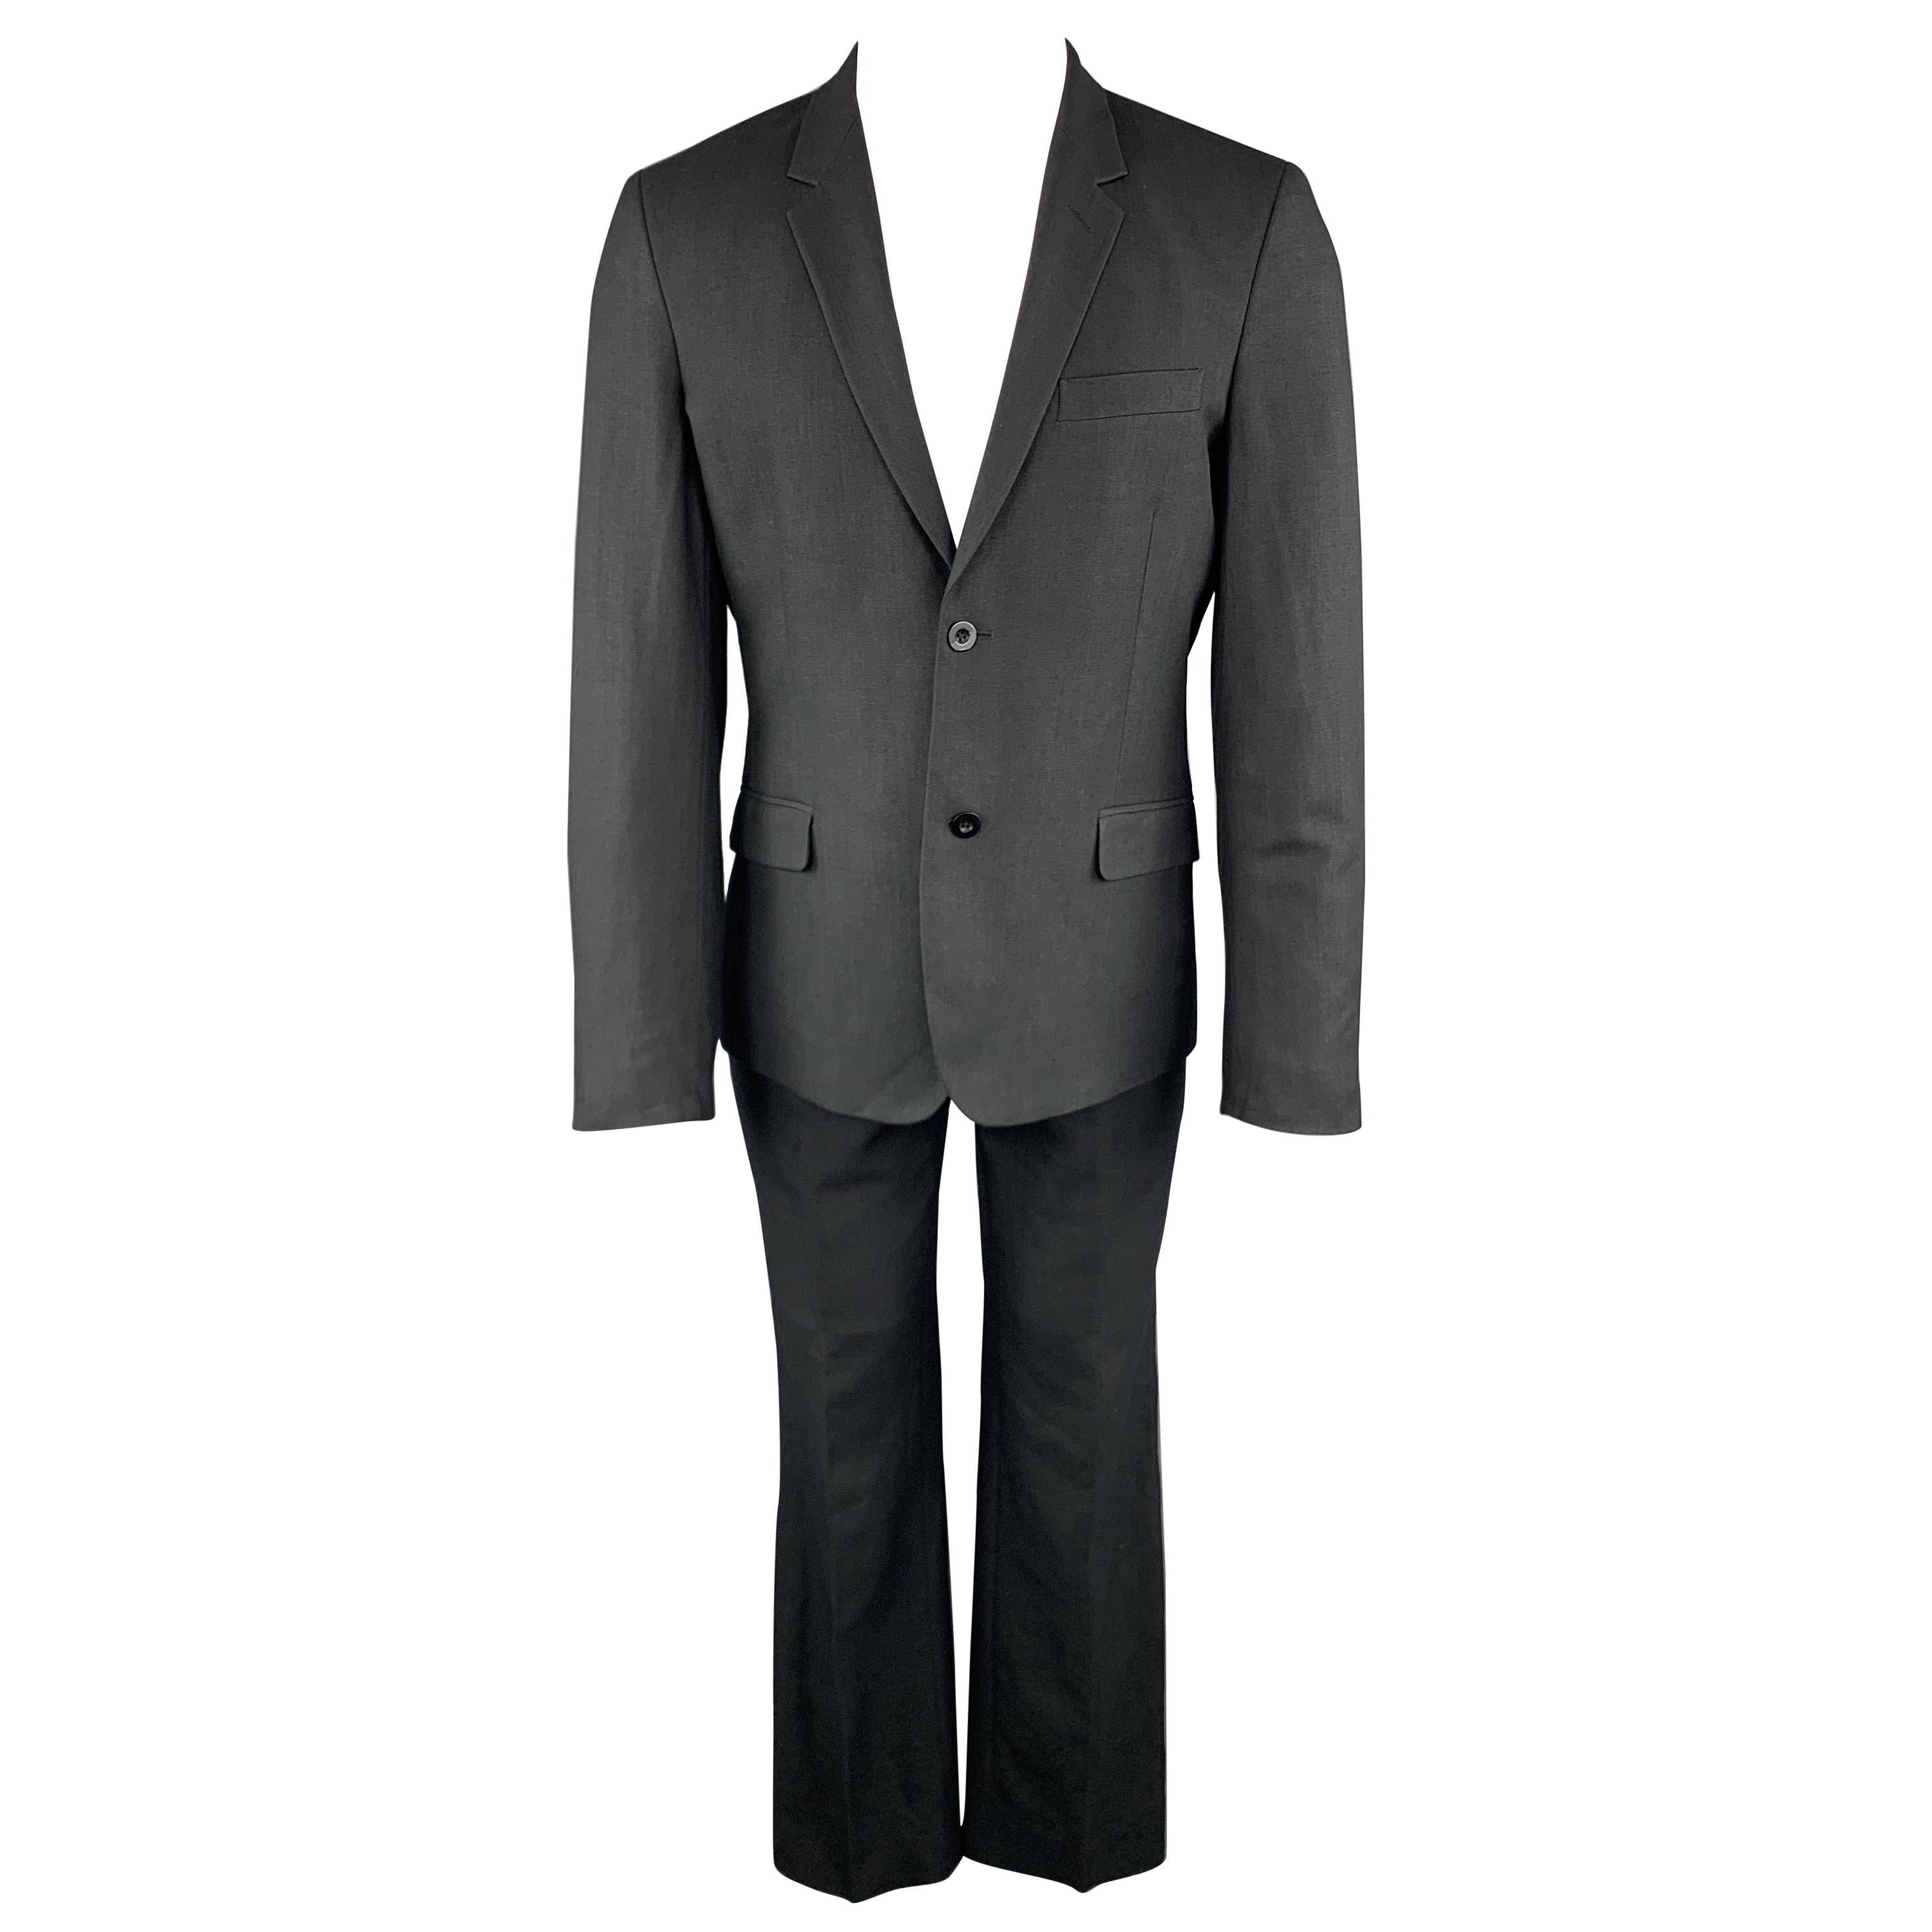 MARC JACOBS Size 38 Solid Black Wool Blend Woven Notch Lapel Suit